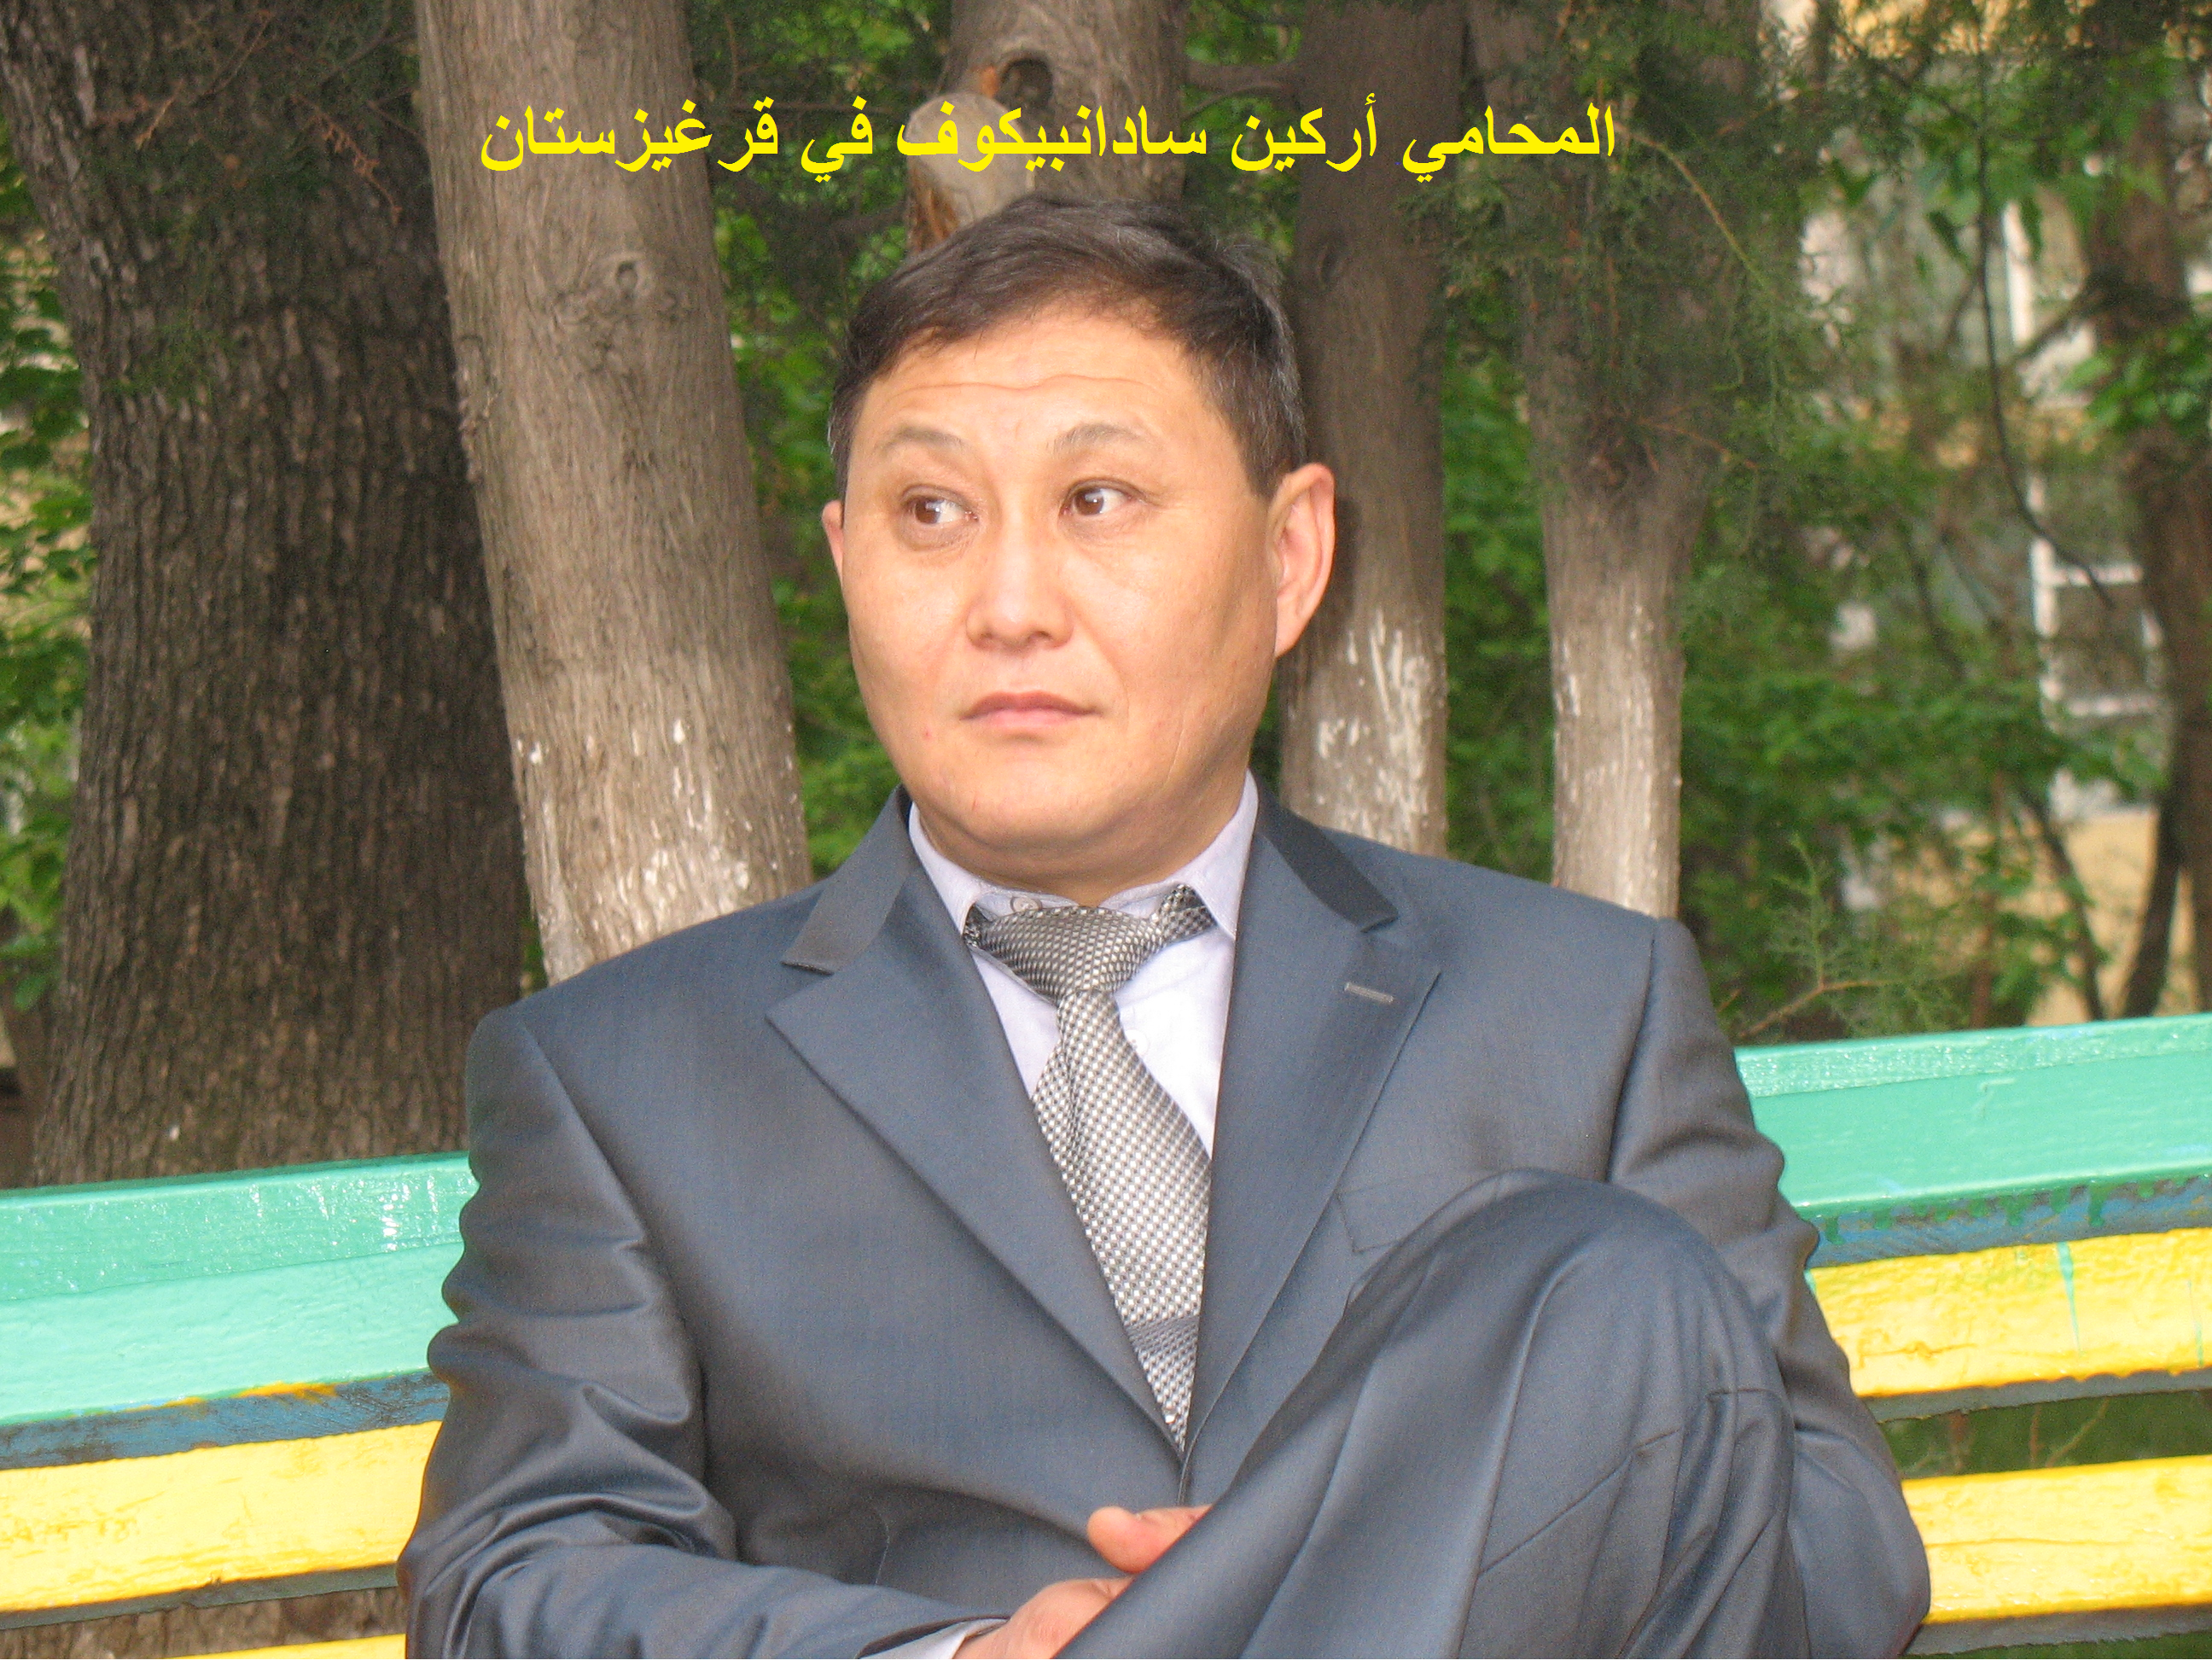 المحامي أركين سادانبيكوف في قرغيزستان